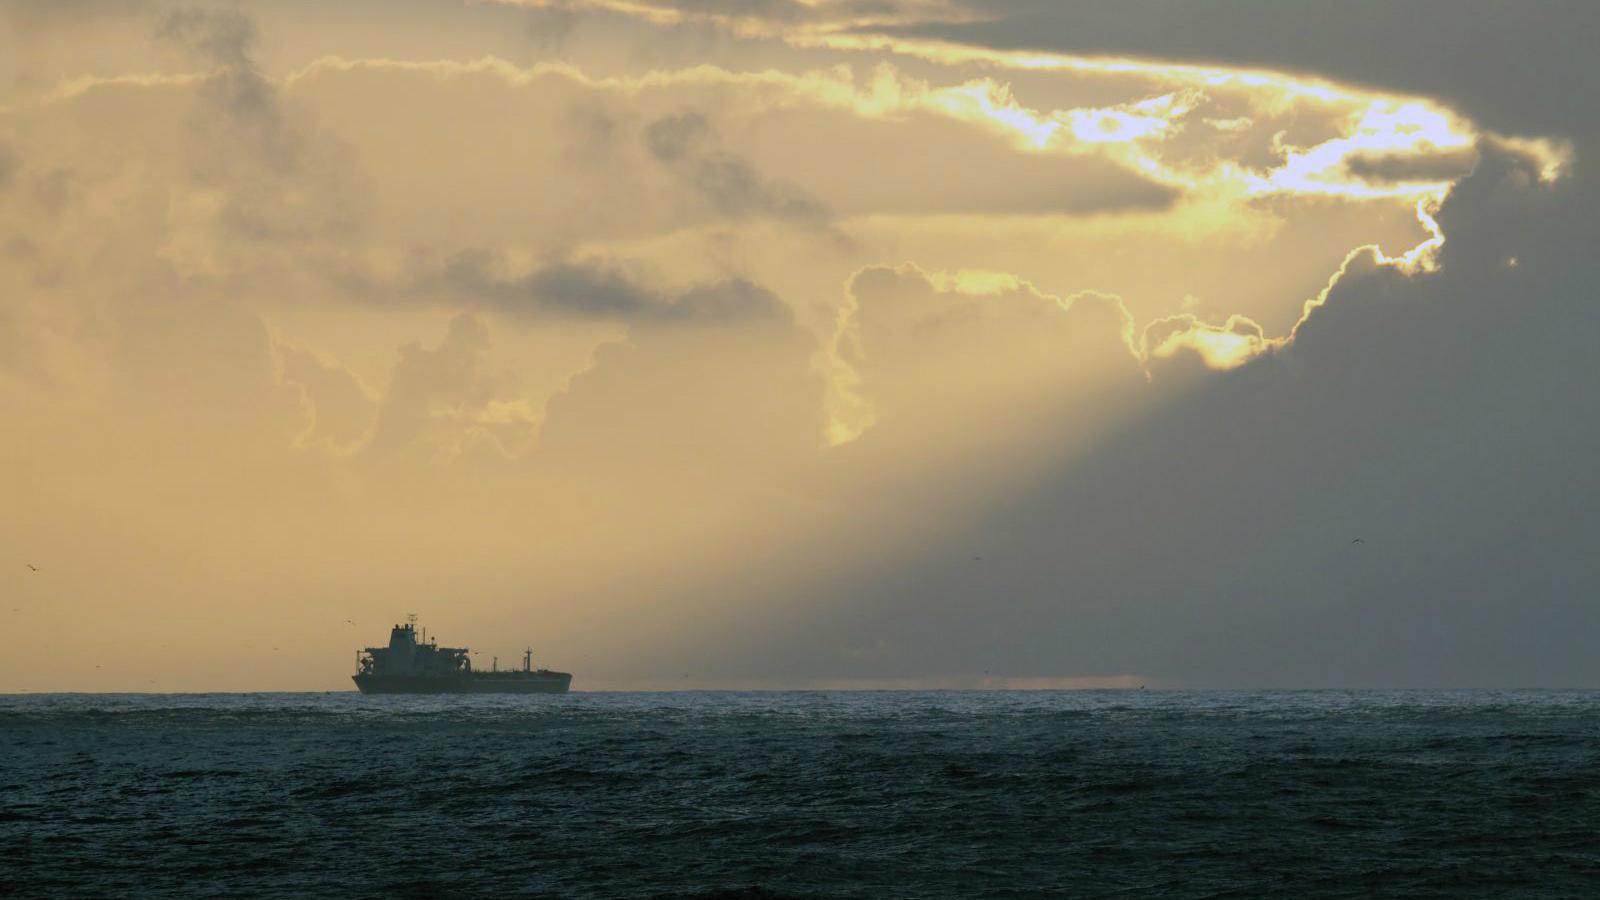 Offshore oil tanker